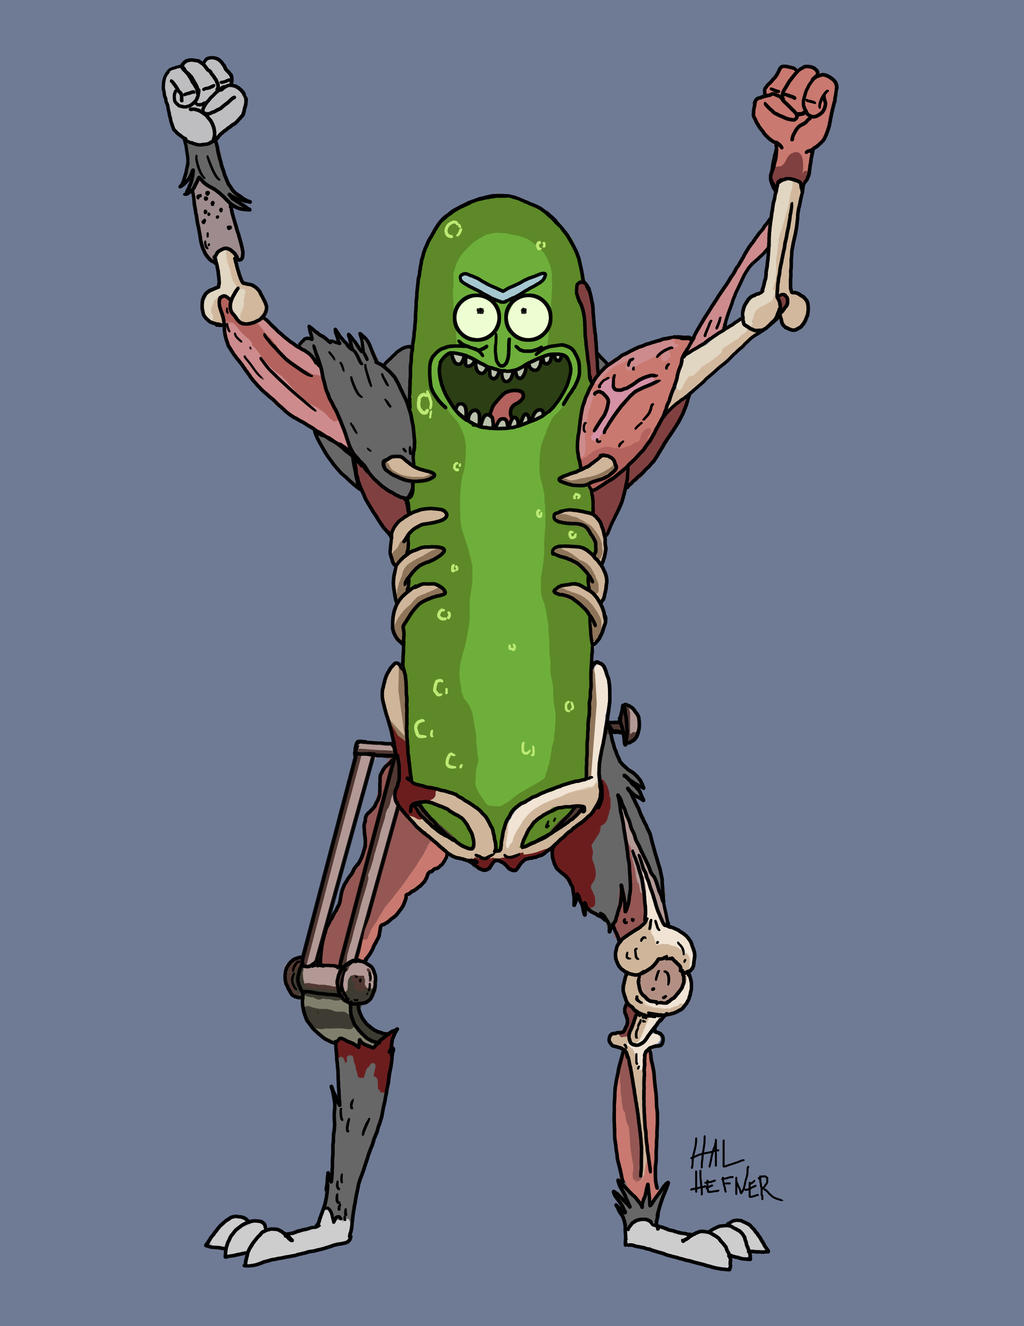 Pickle Rick by HalHefnerART on DeviantArt.